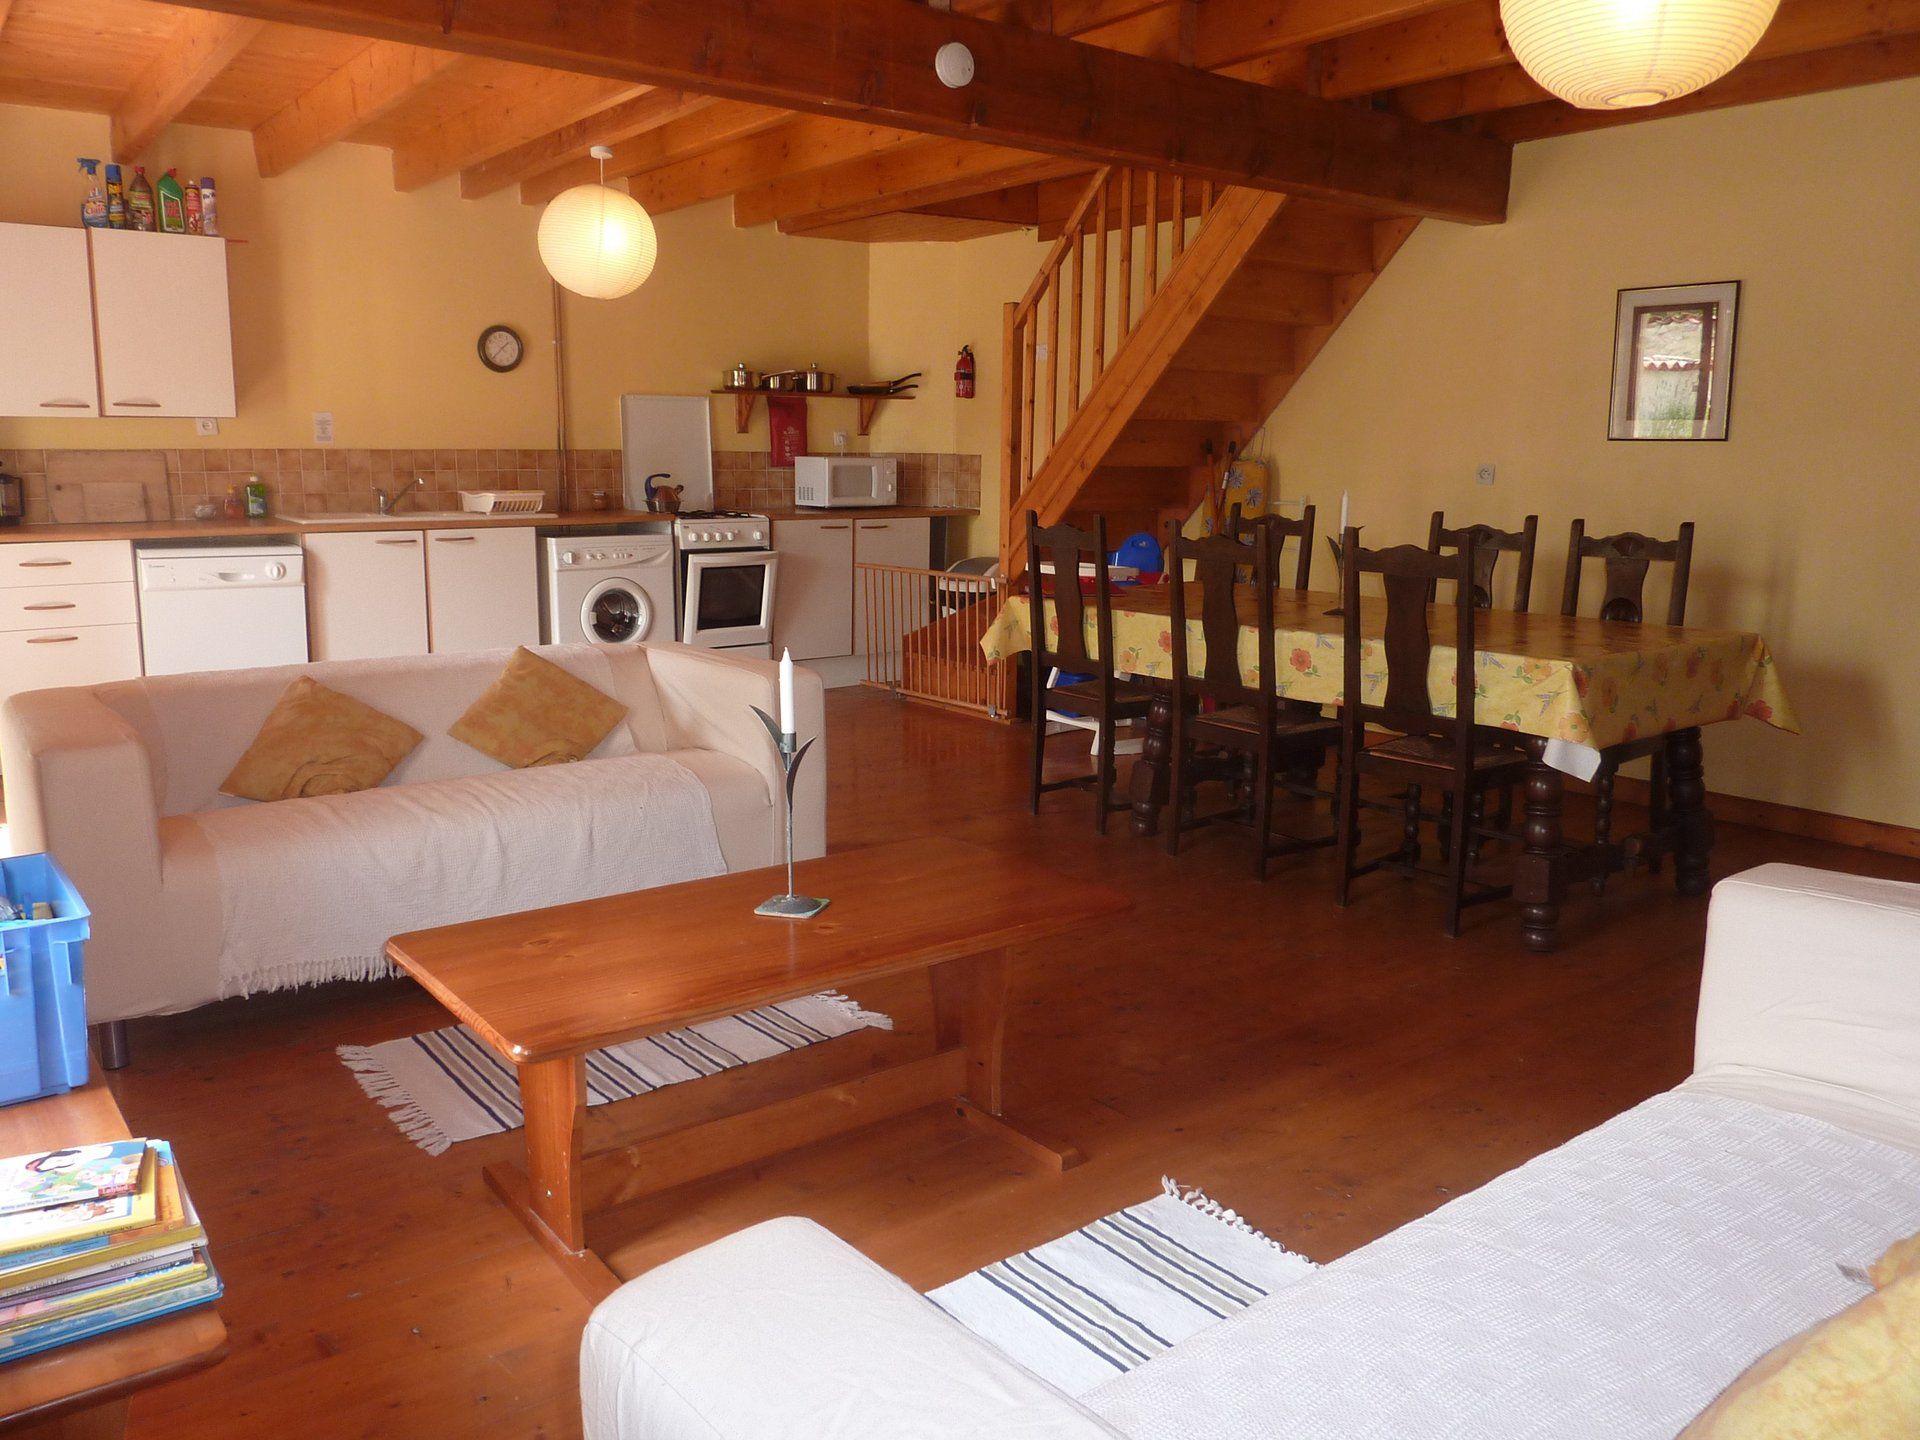 Vierge vakantiehuis met houten vloer, crèmekleurige Ikea-banken in Les Vallaies, Frankrijk